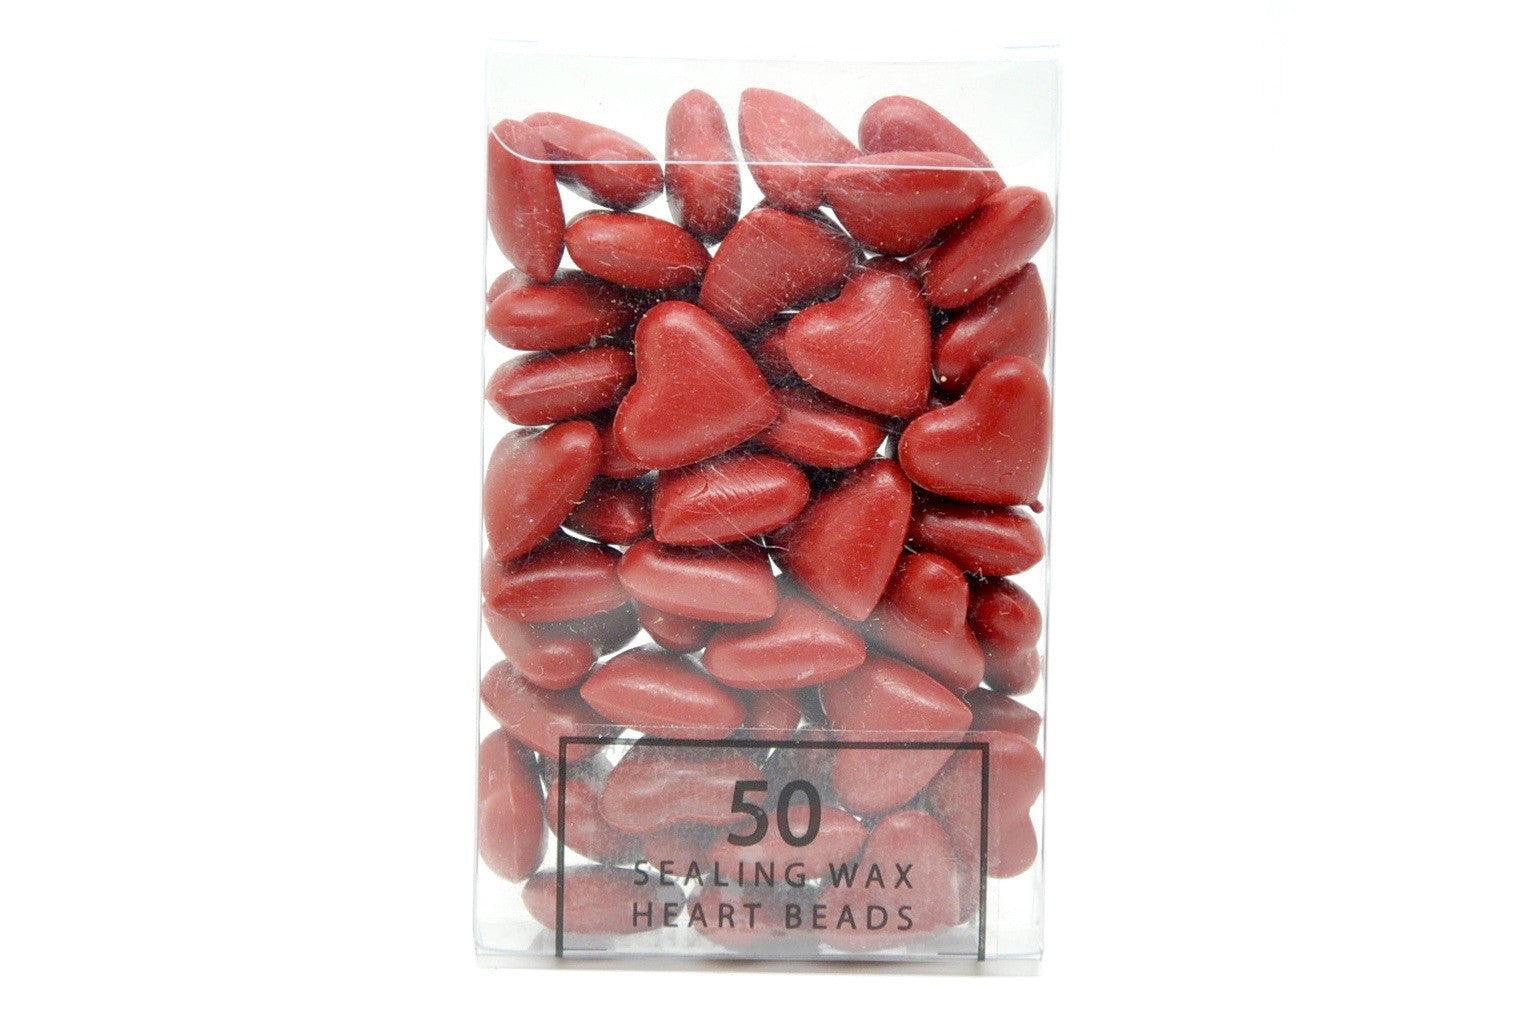 Palm Red Sealing Wax Heart Bead - Backtozero B20 - Heart Bead, Heart Wax, Palm Red, sale, Sealing Wax, Wax Bead